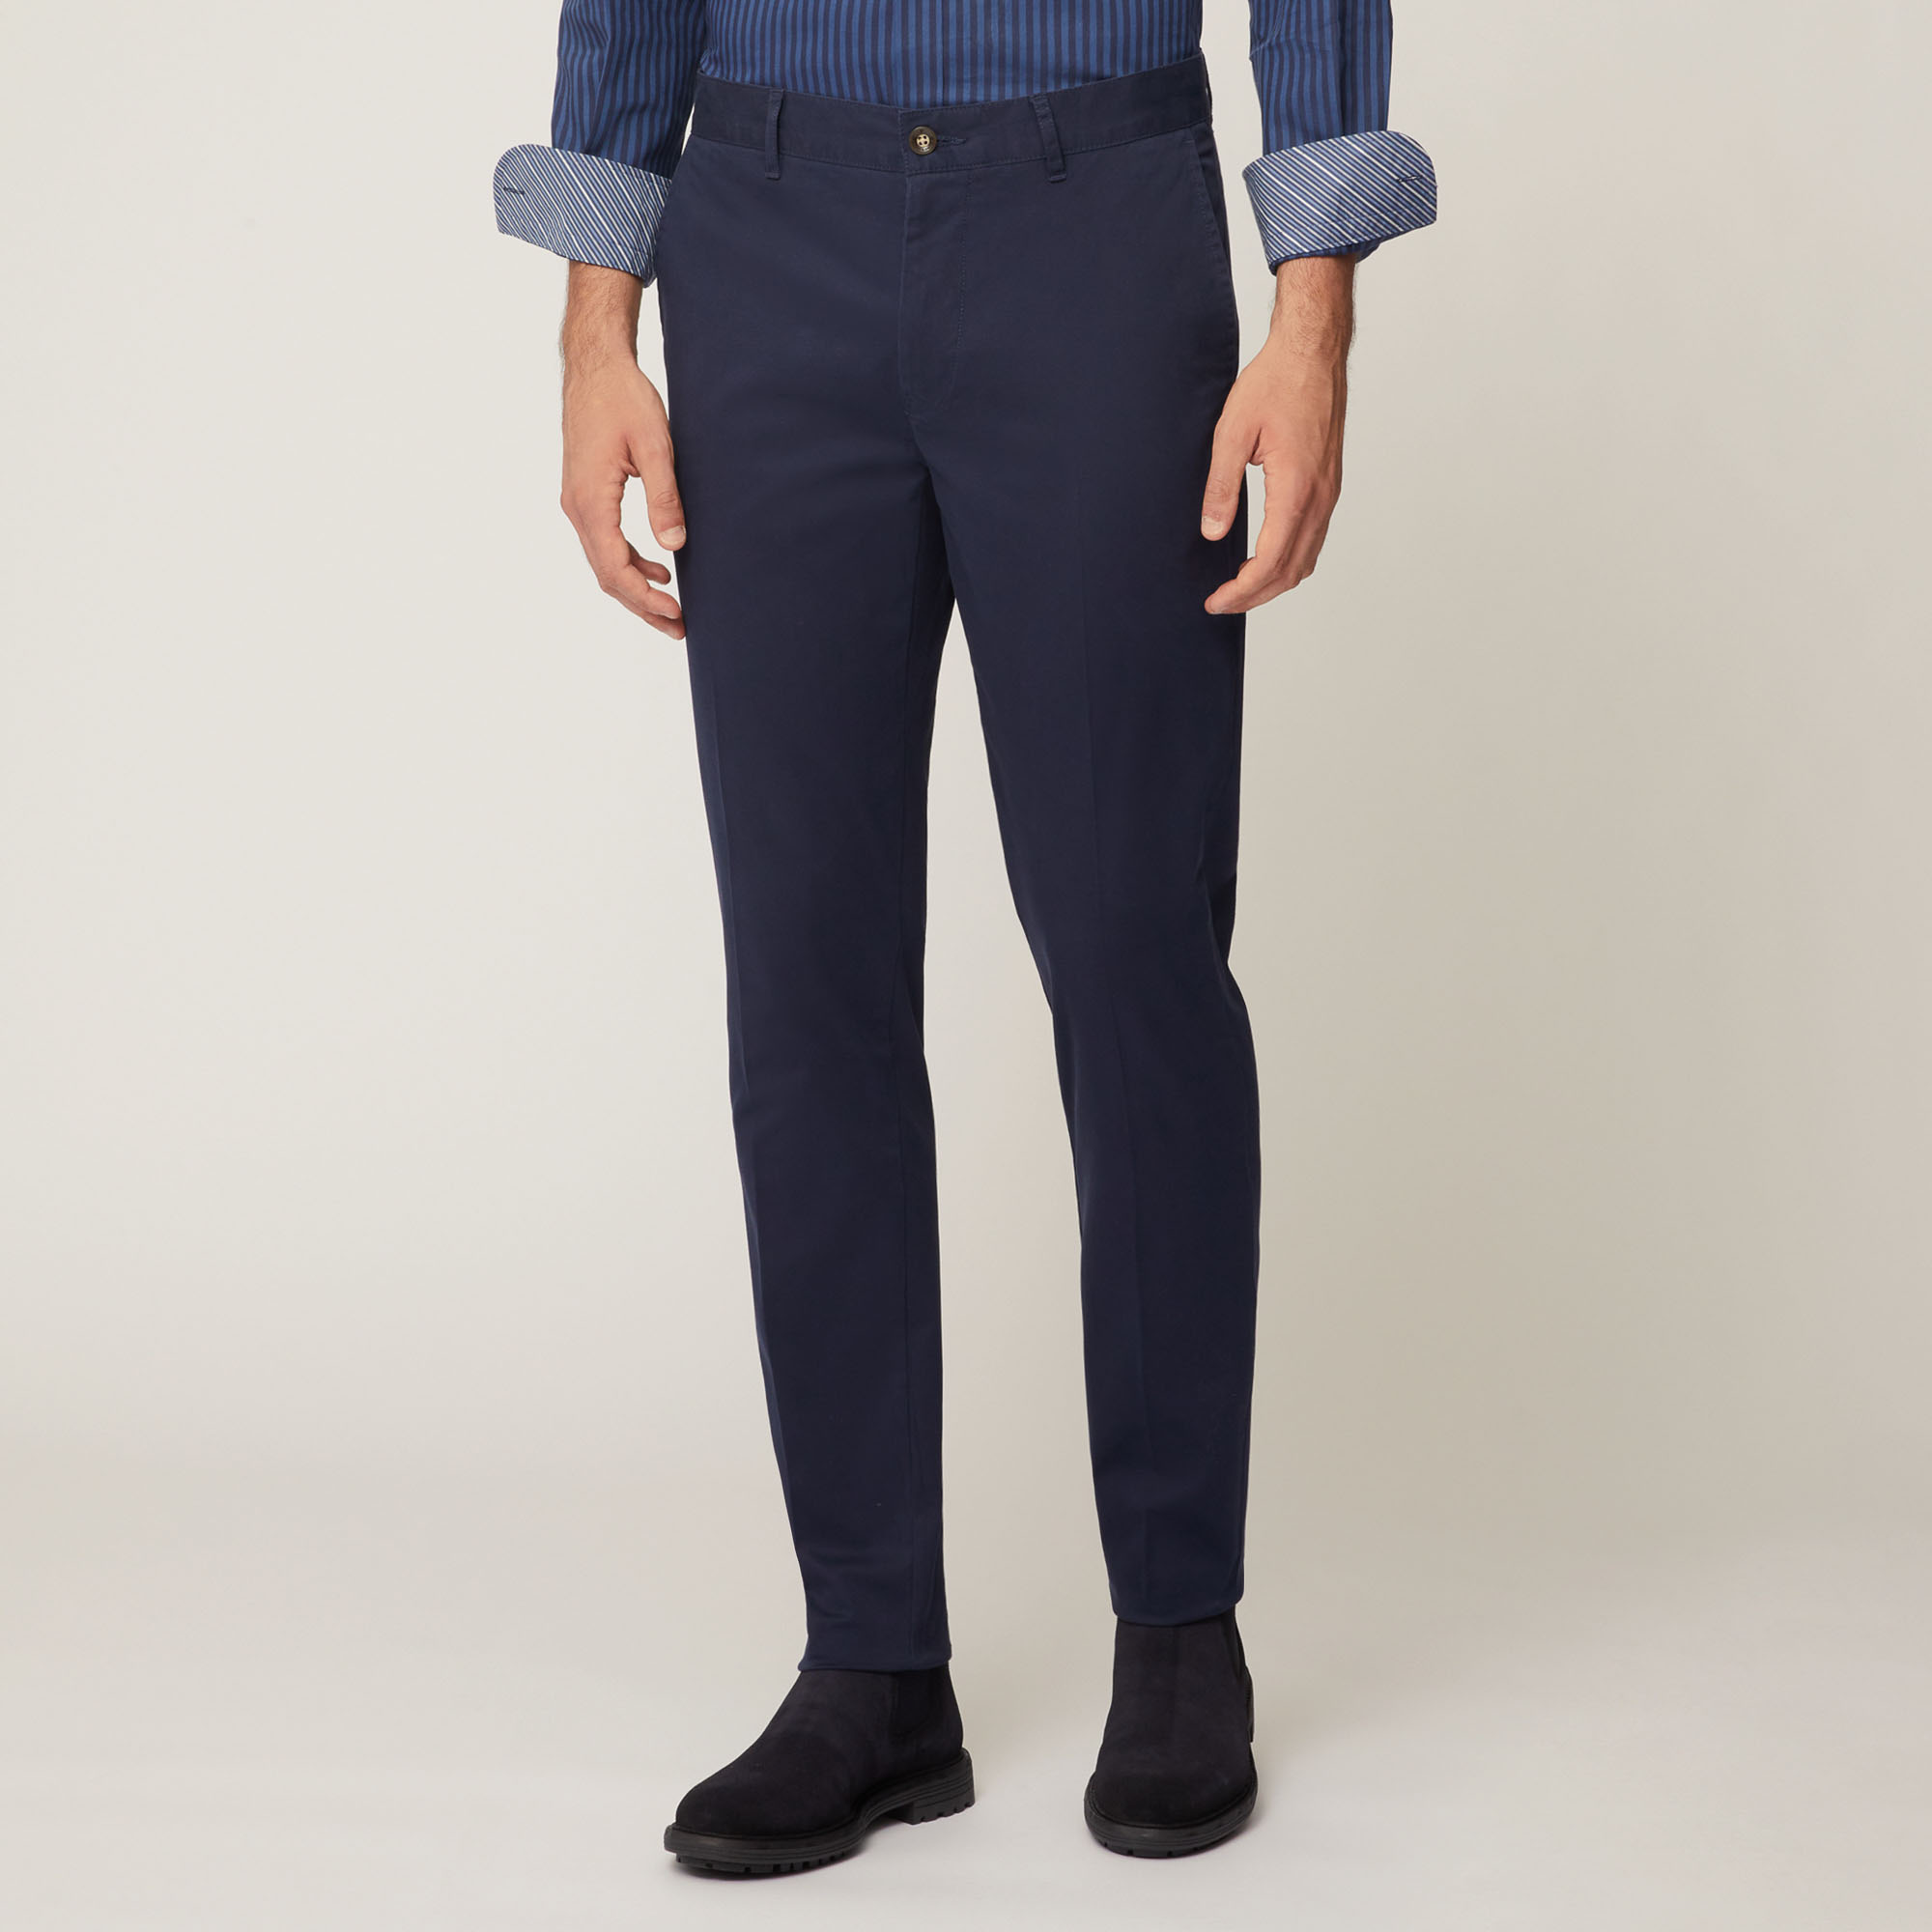 Pantalone Chino Narrow In Twill Leggero Di Cotone, Light Blue, large